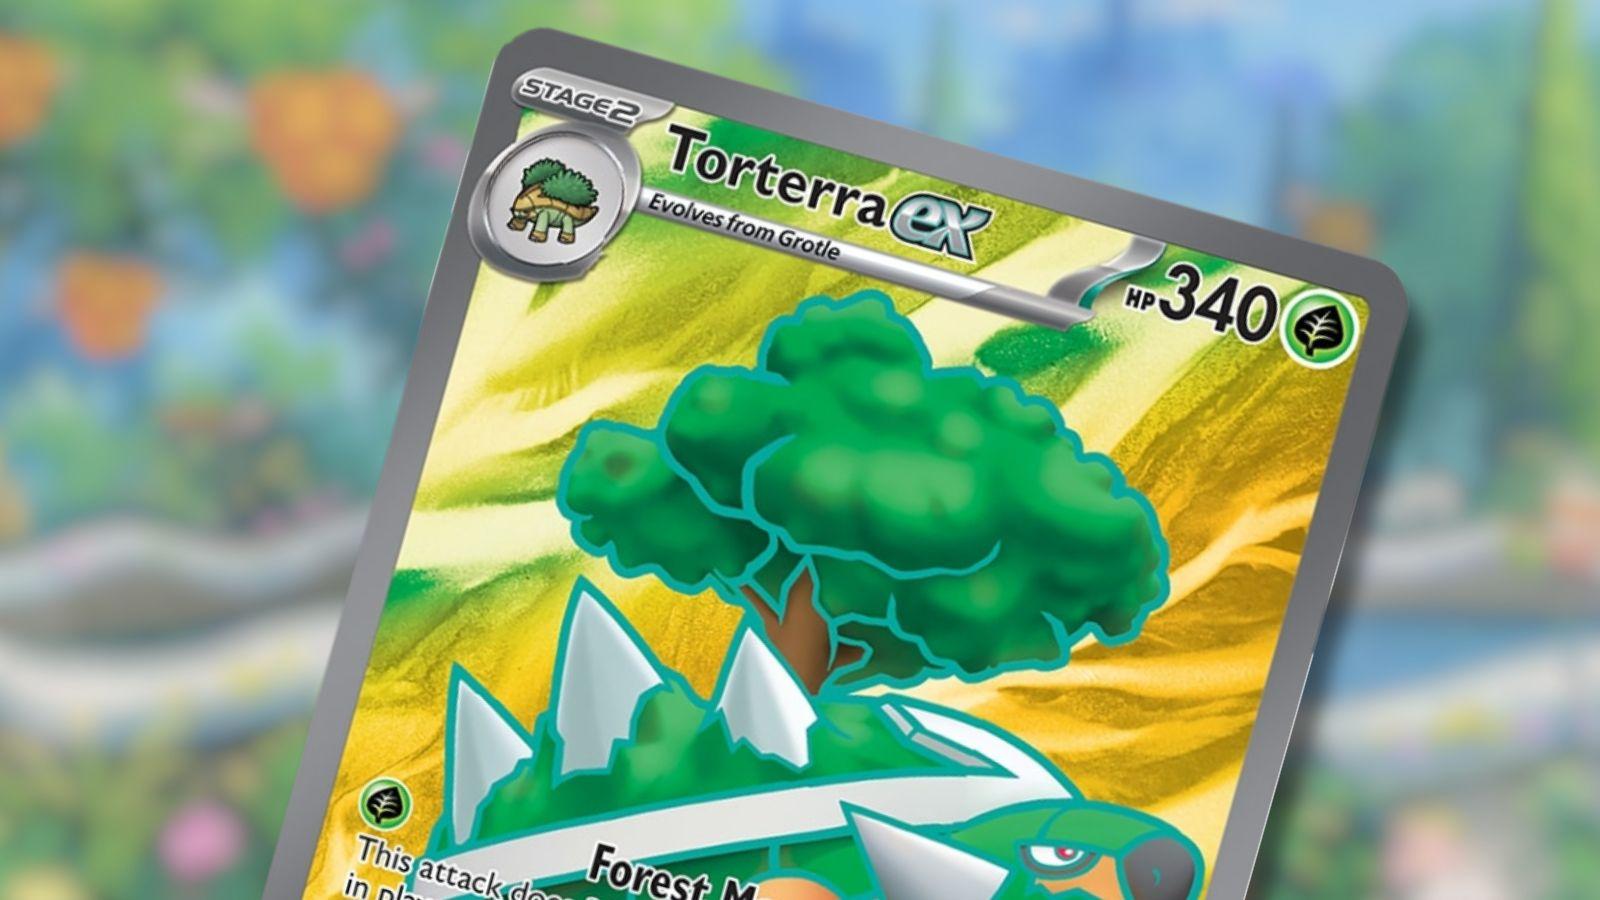 Torterra Ex Pokemon card with garden background.